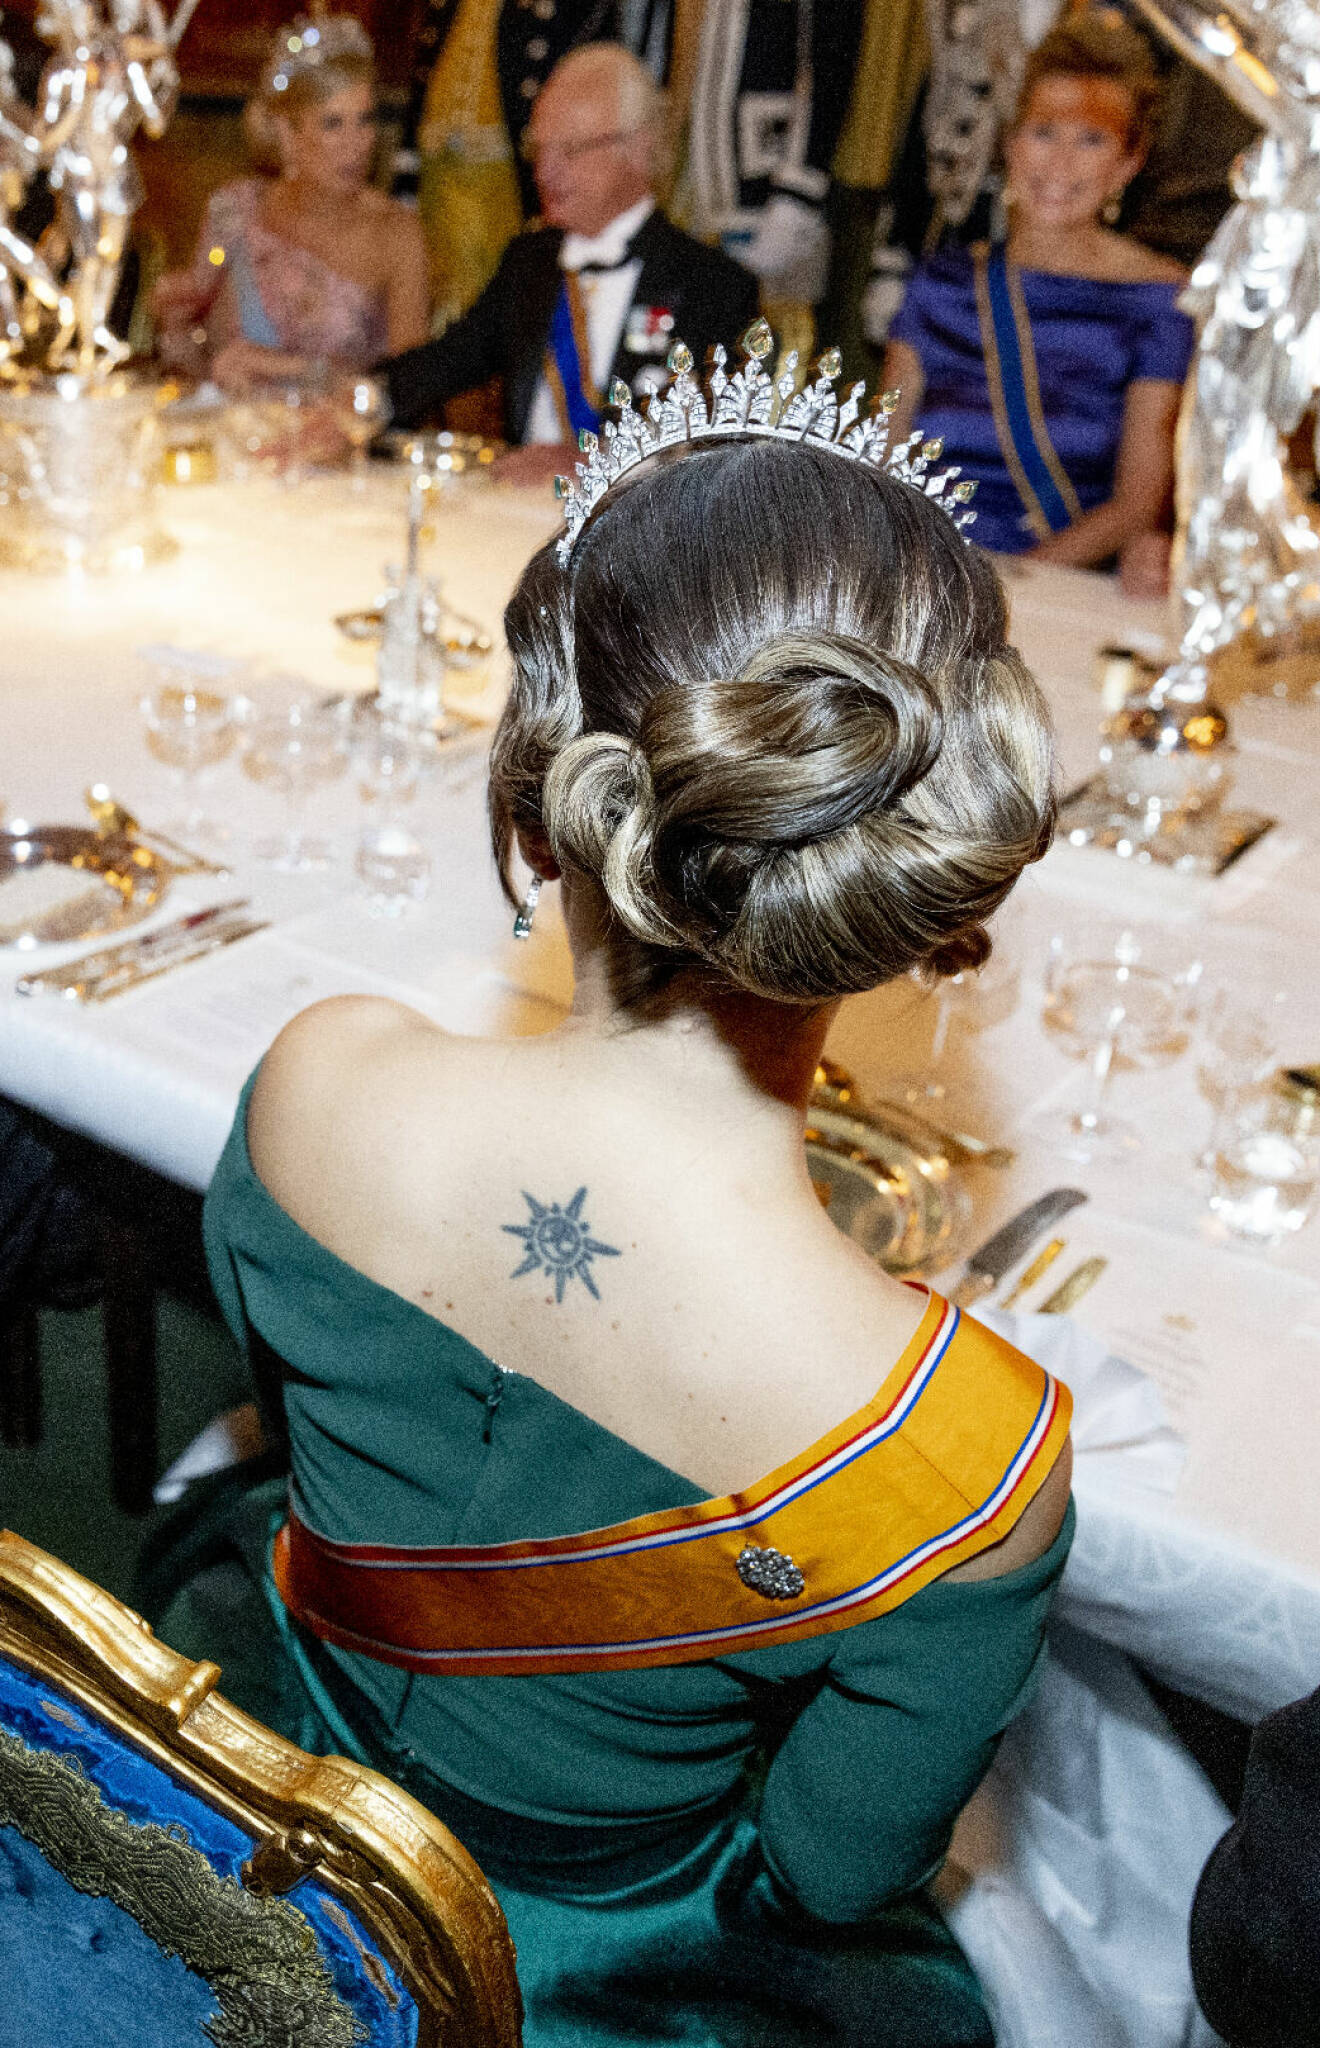 Prinsessan Sofia på kungamiddag med tiara och tatuering